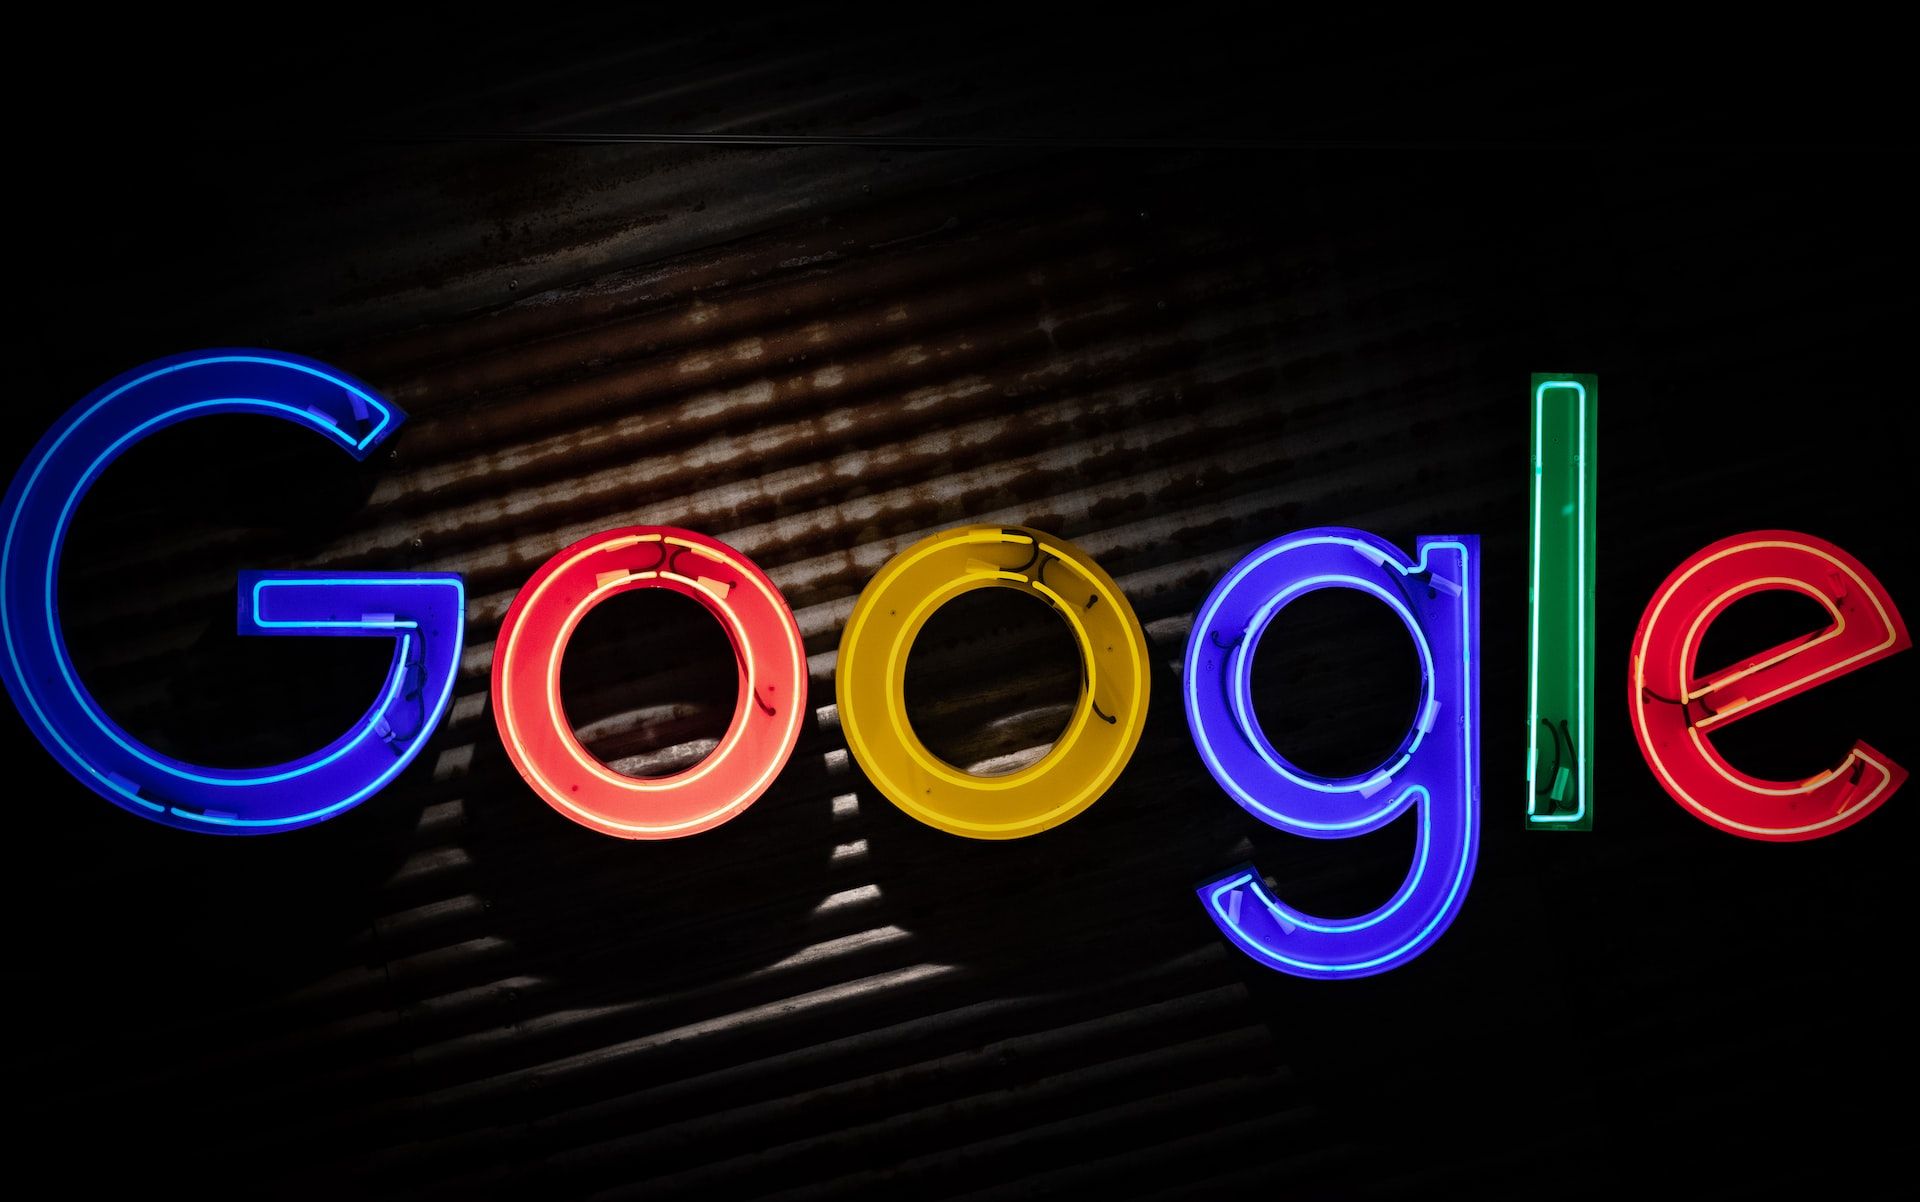 Letretro luminoso con el logo de Google